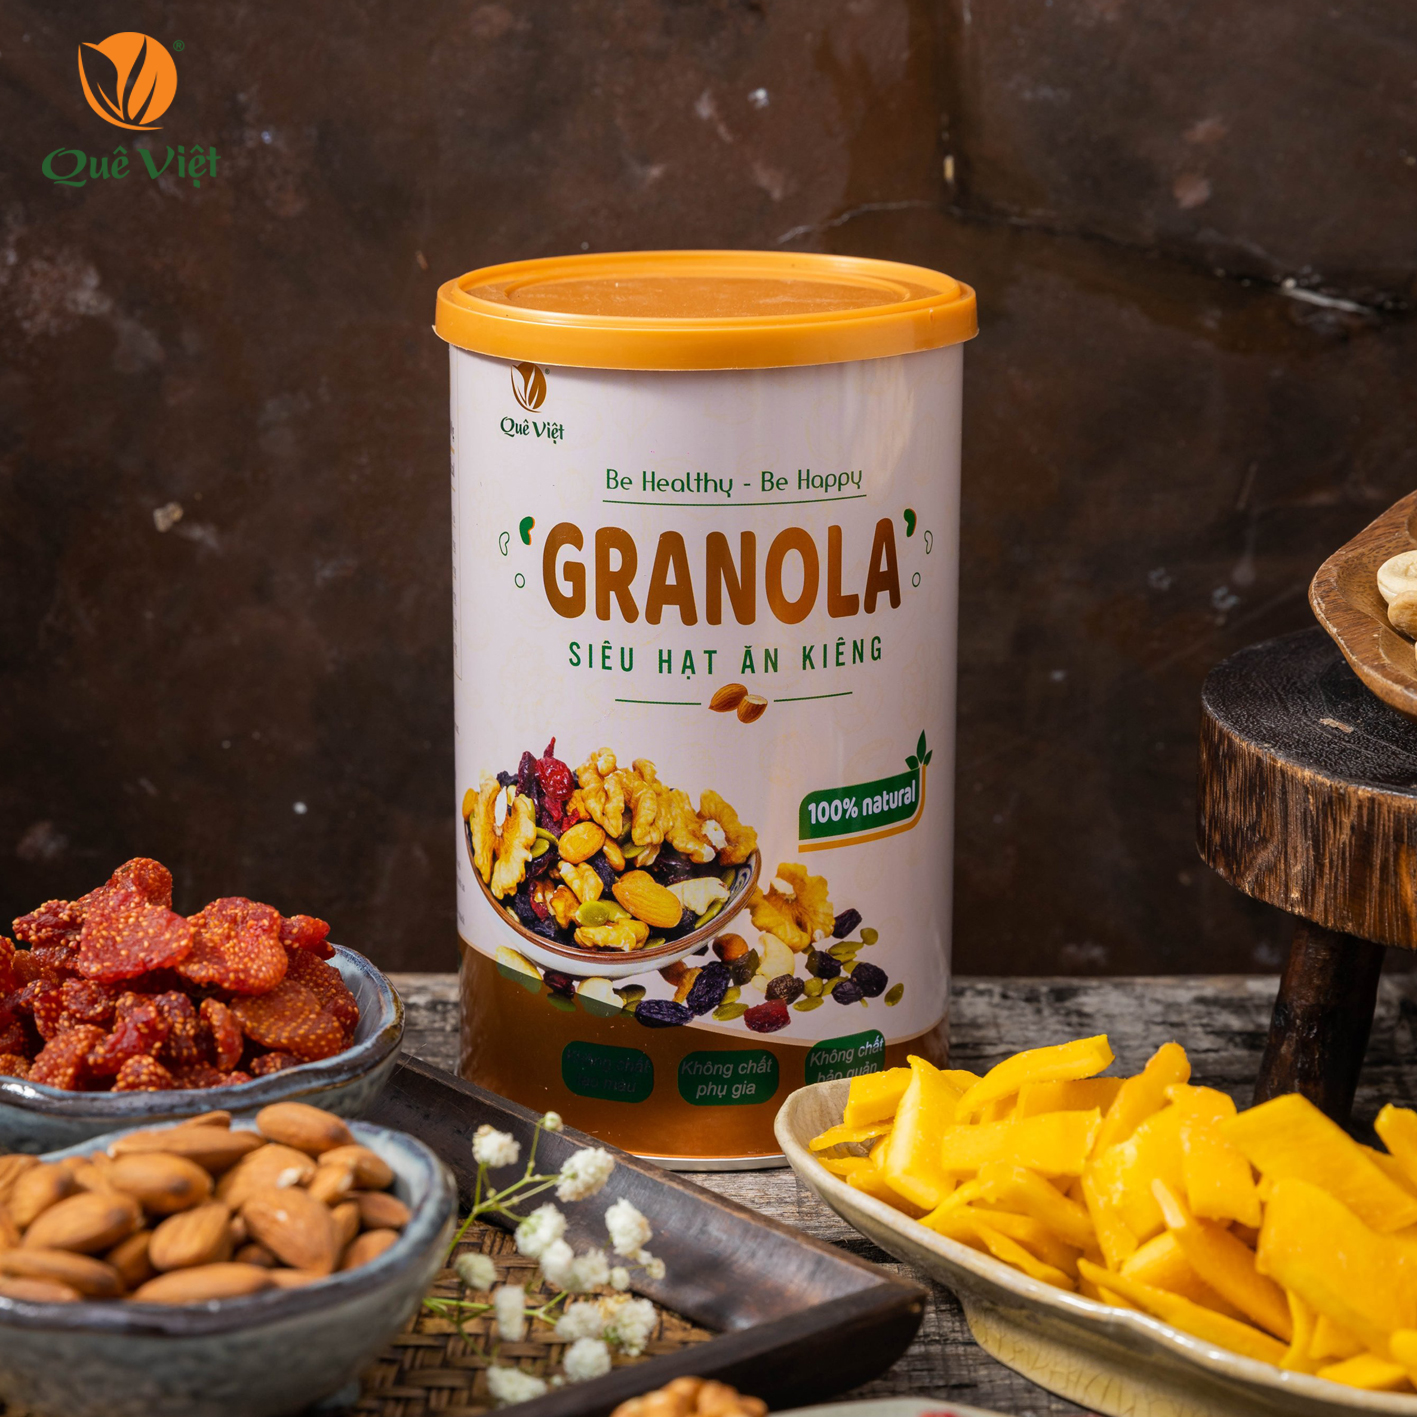 Granola siêu hạt ngũ cốc ăn kiêng Quê Việt, nguyên liệu hữu cơ - combo 5 hộp x 500g/hộp